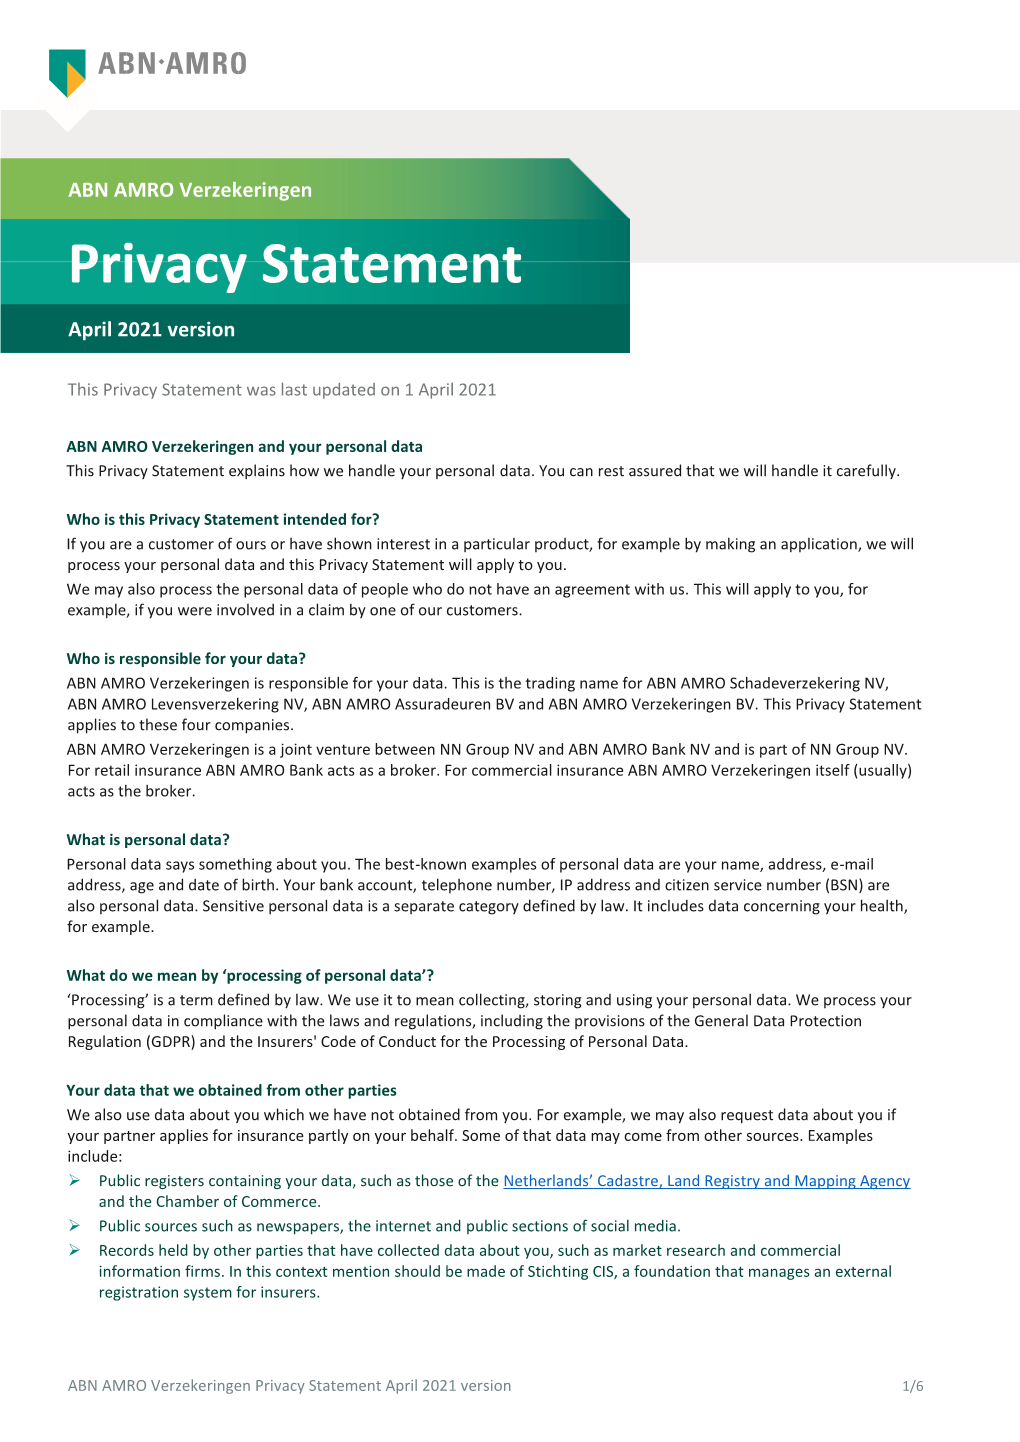 ABN AMRO Verzekeringen's Privacy Statement